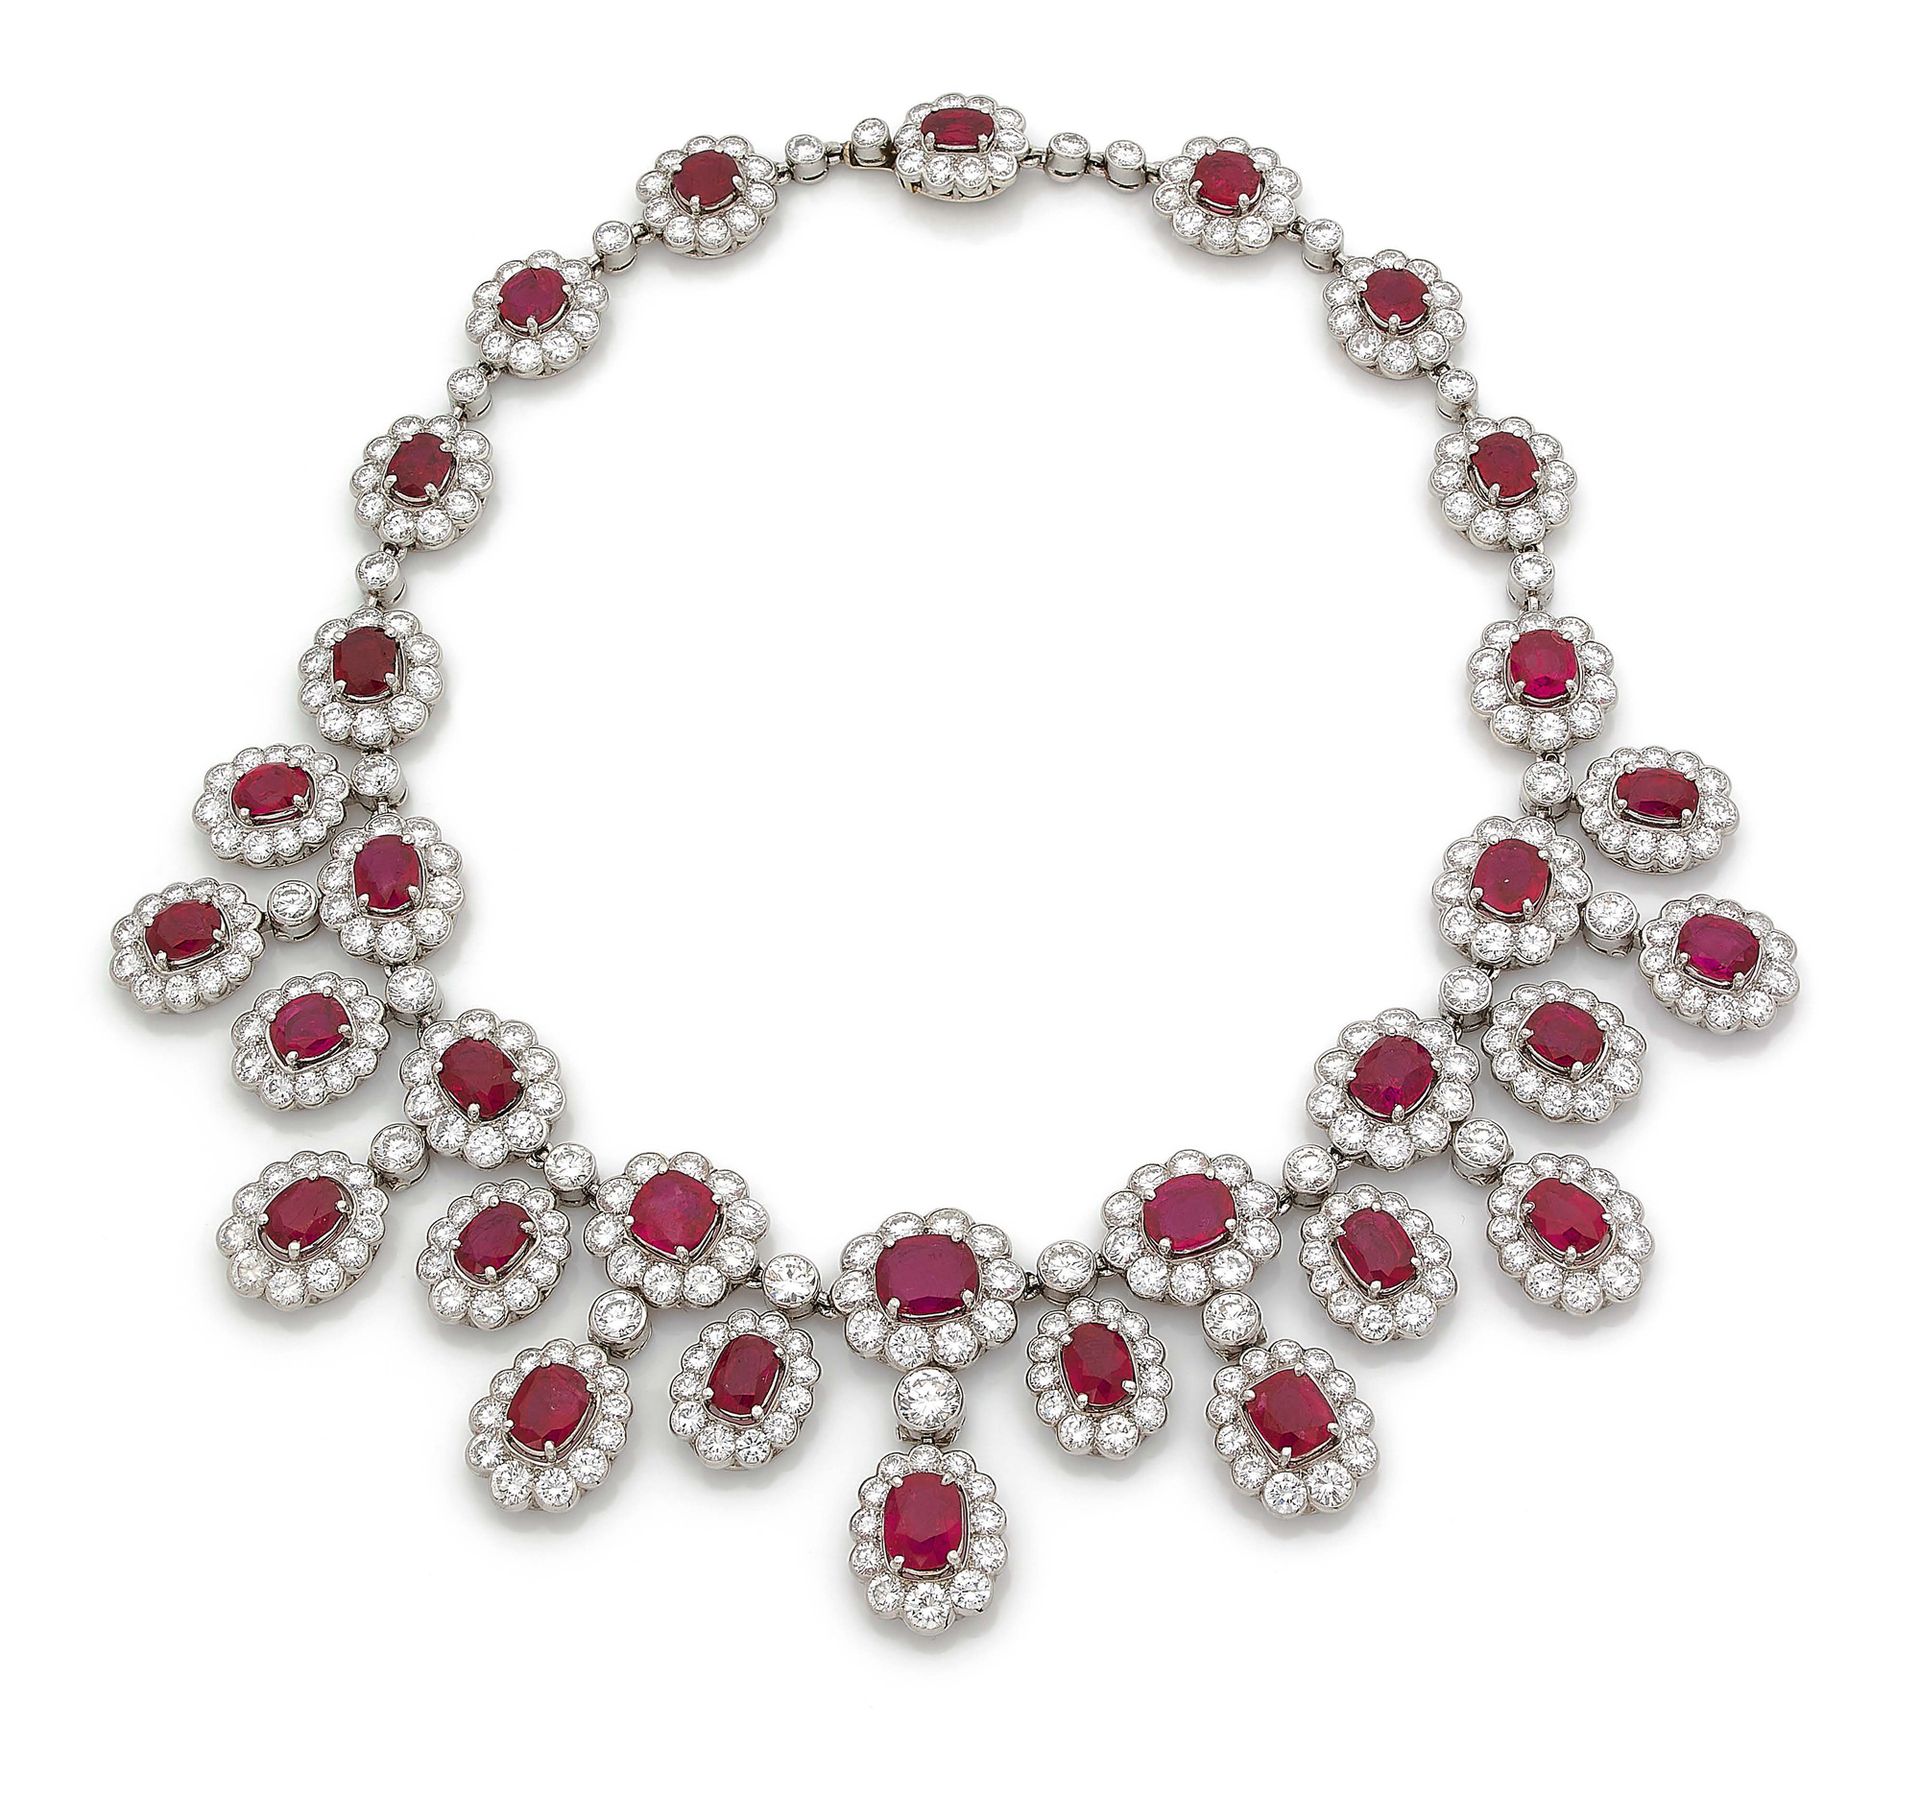 CHAUMET 
帘子 "项链

椭圆形和枕形红宝石，圆形钻石

铂金 (950)

有签名和编号的作品，约1980年

L. : 36.5 cm approx&hellip;